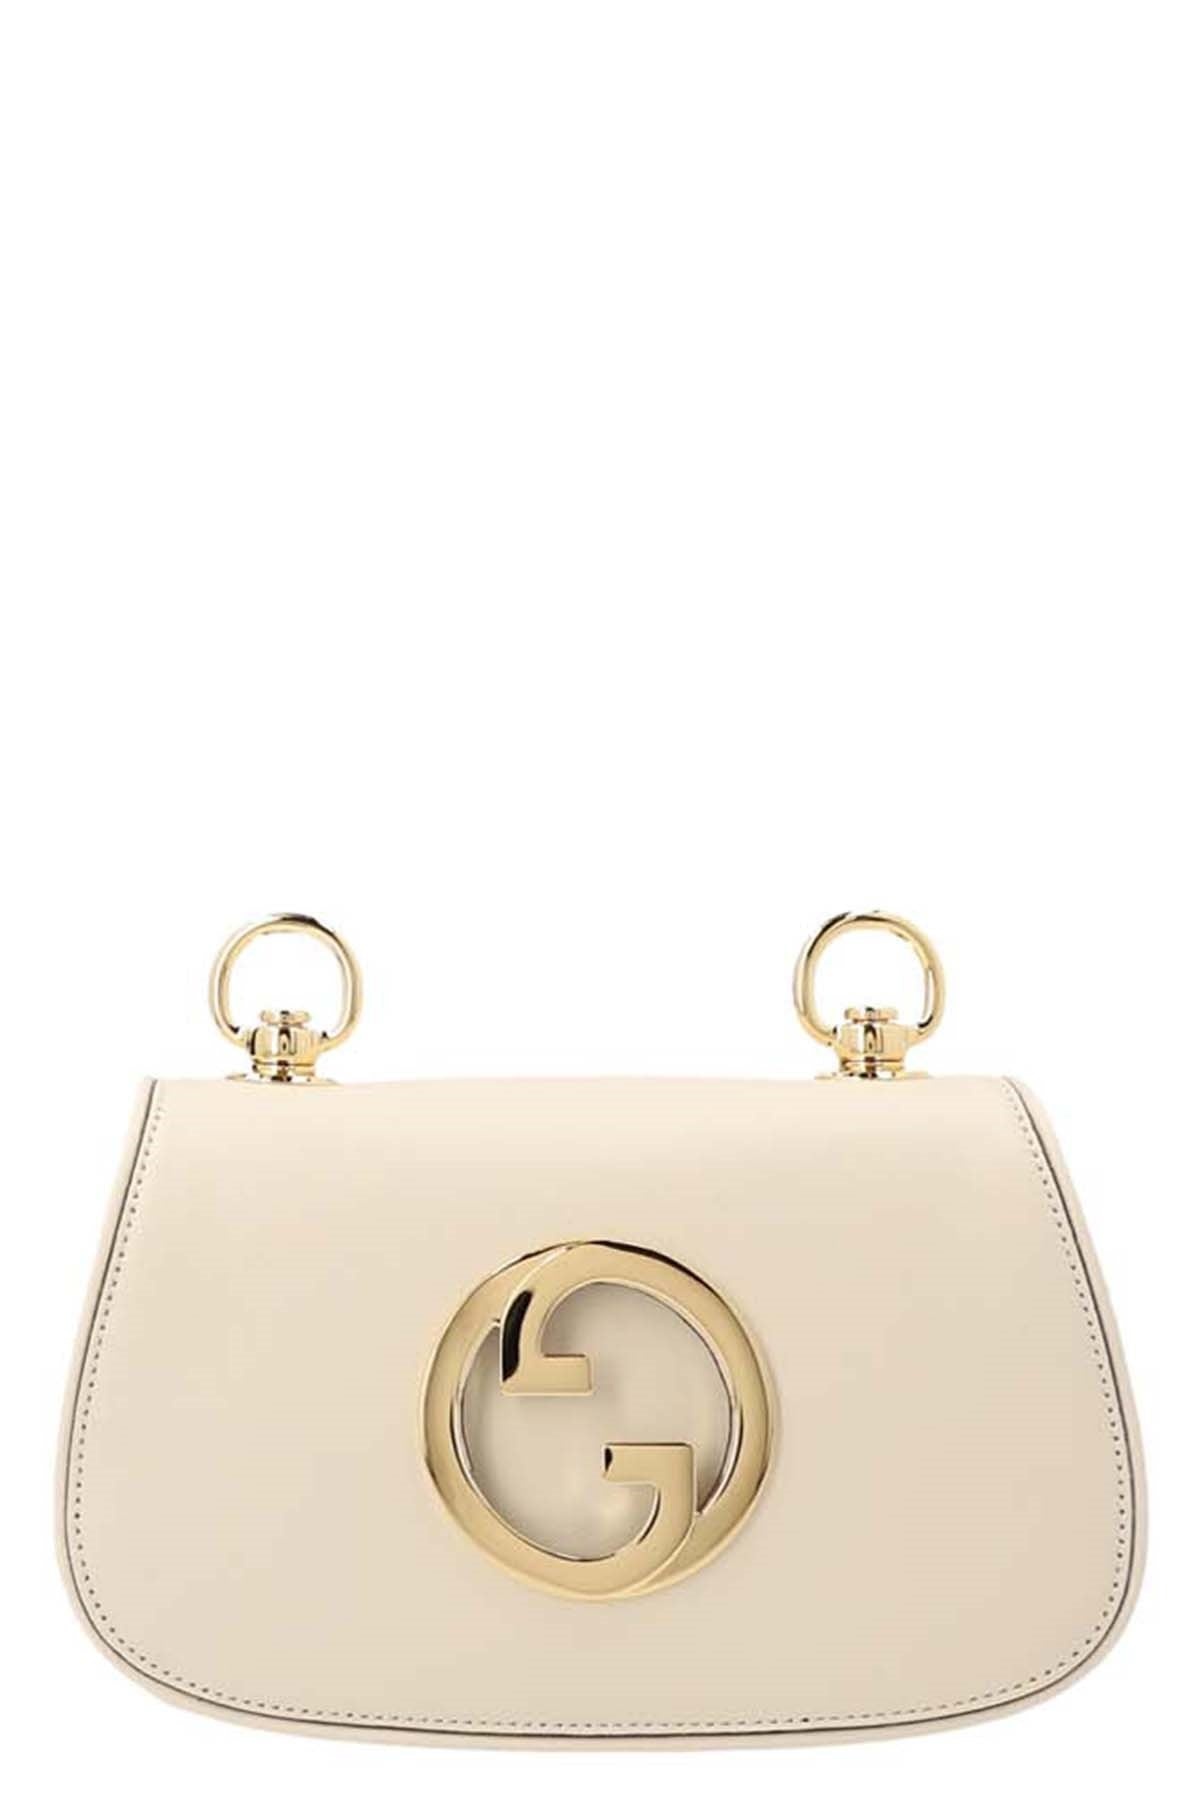 Gucci Women 'Gucci Blondie' Mini Shoulder Bag - 1